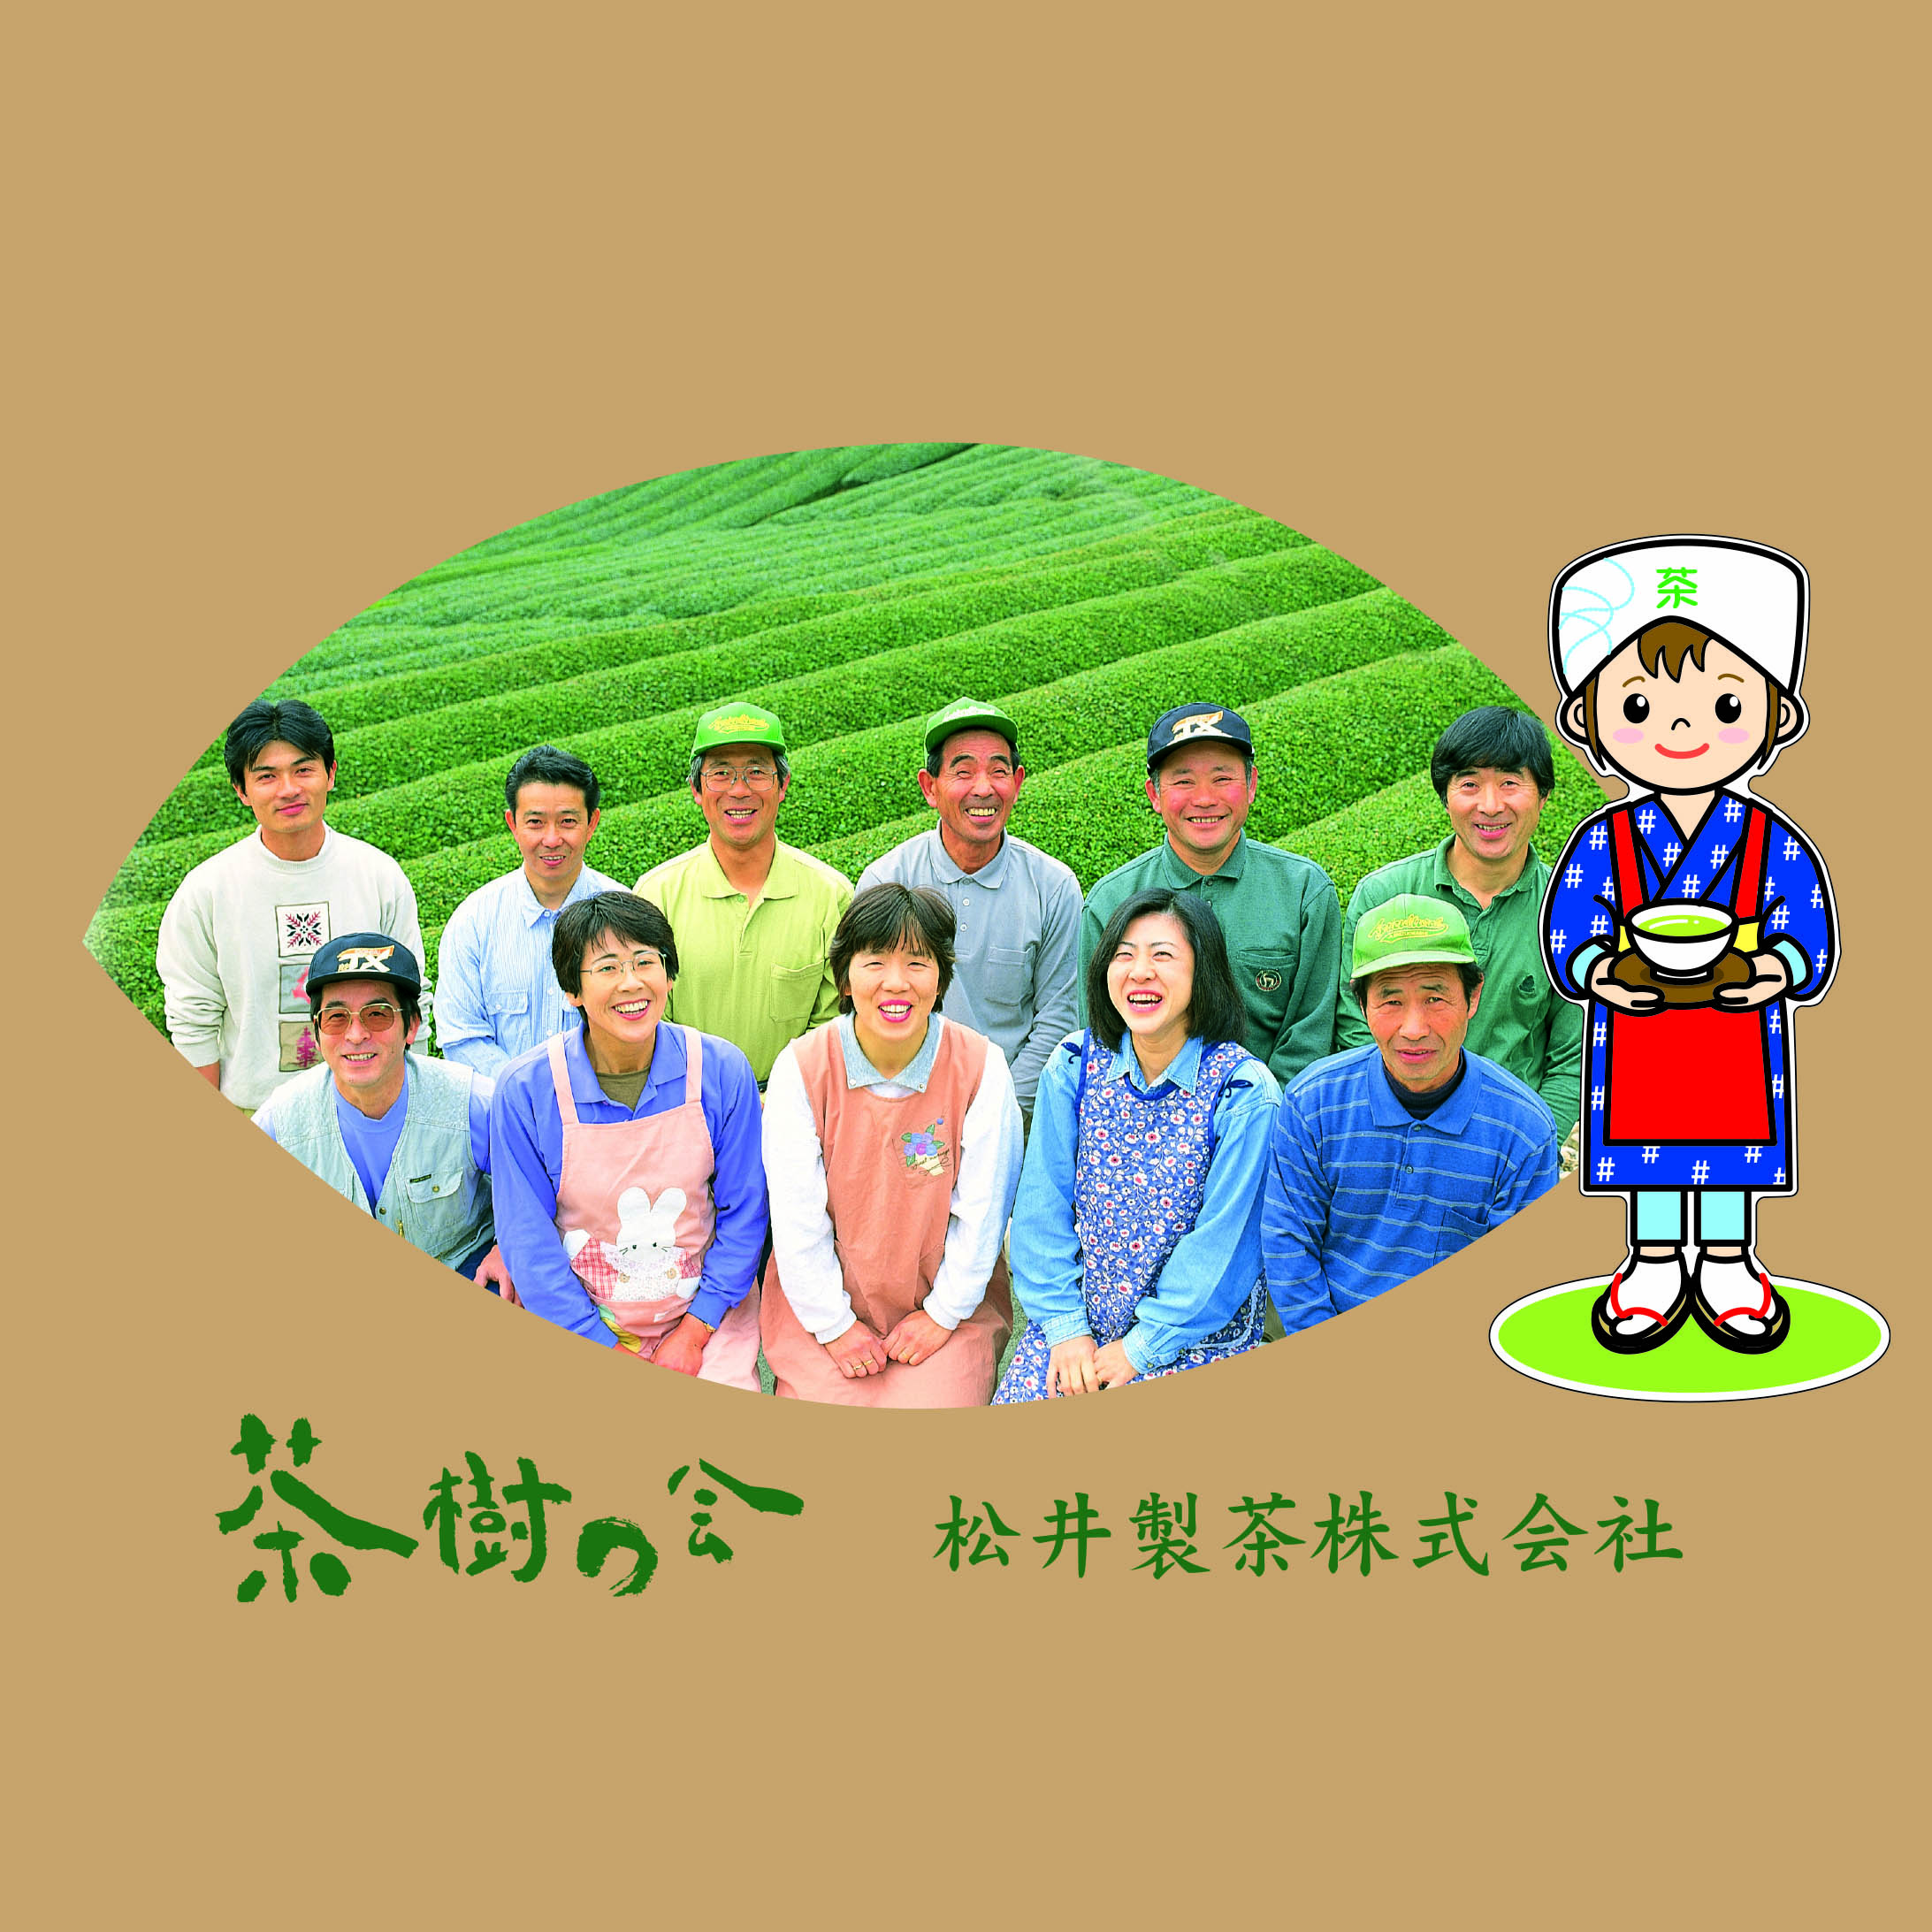 松井製茶株式会社